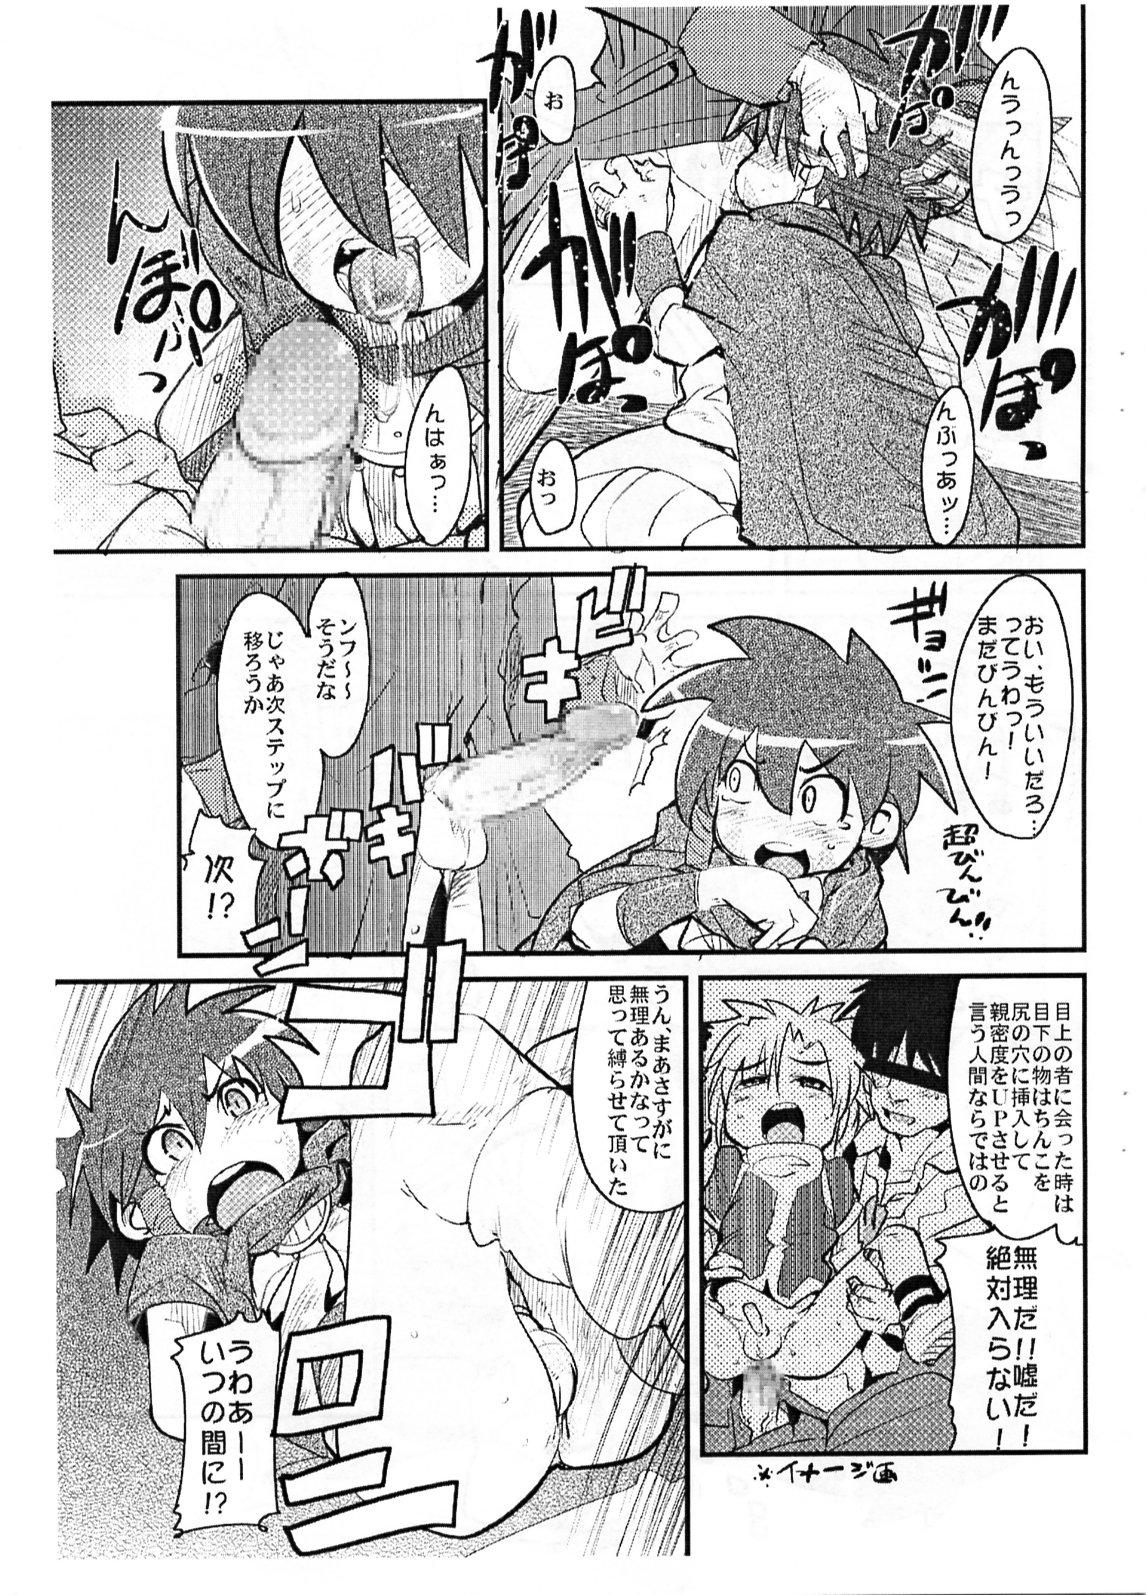 Condom Yaseiji ni iroiro oshieru hon nano da - Digimon savers Deutsche - Page 6